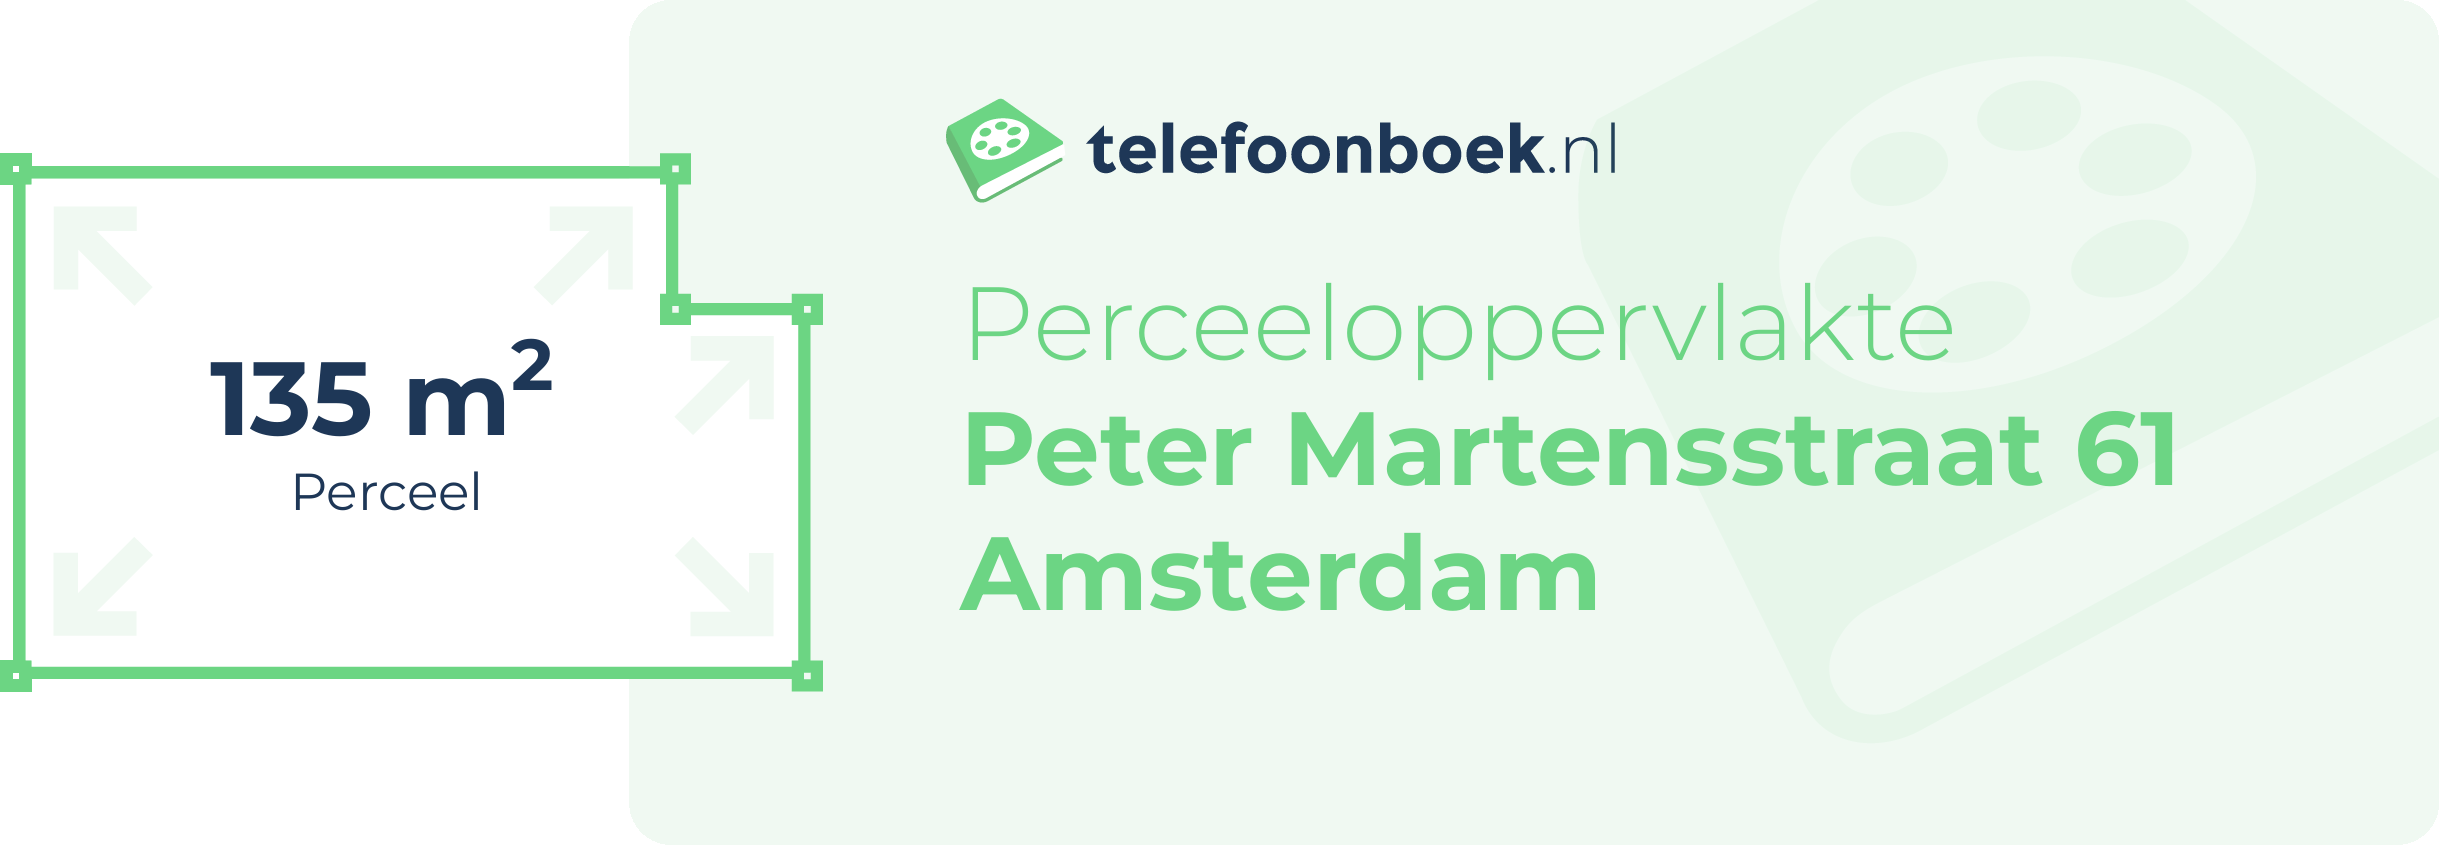 Perceeloppervlakte Peter Martensstraat 61 Amsterdam